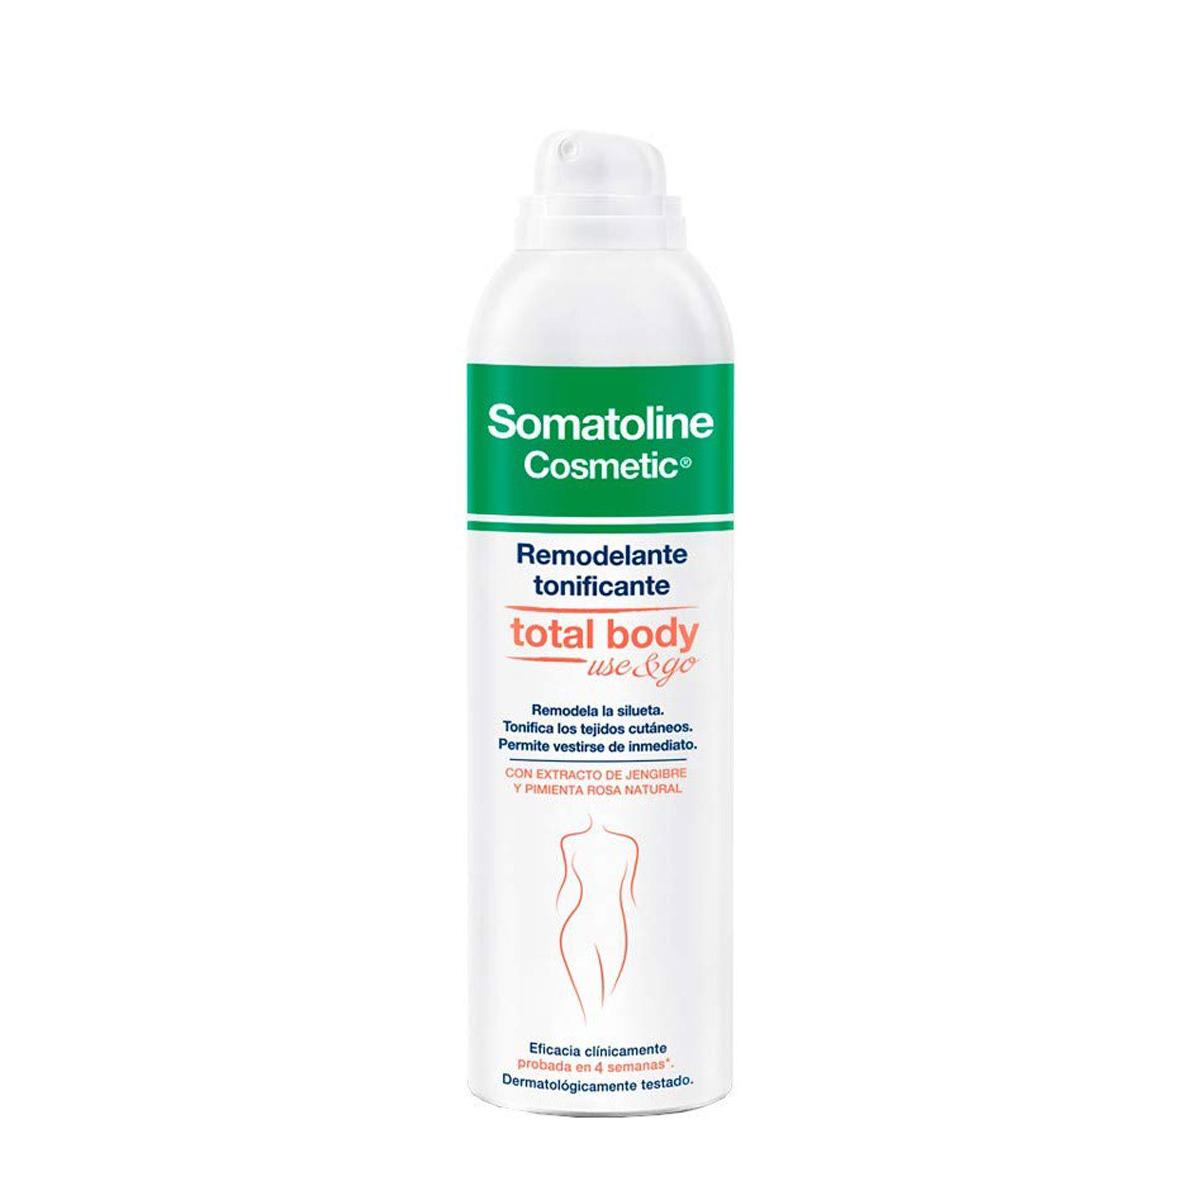 Somatoline - Somatoline remodelante tonificante body spray 200 ml